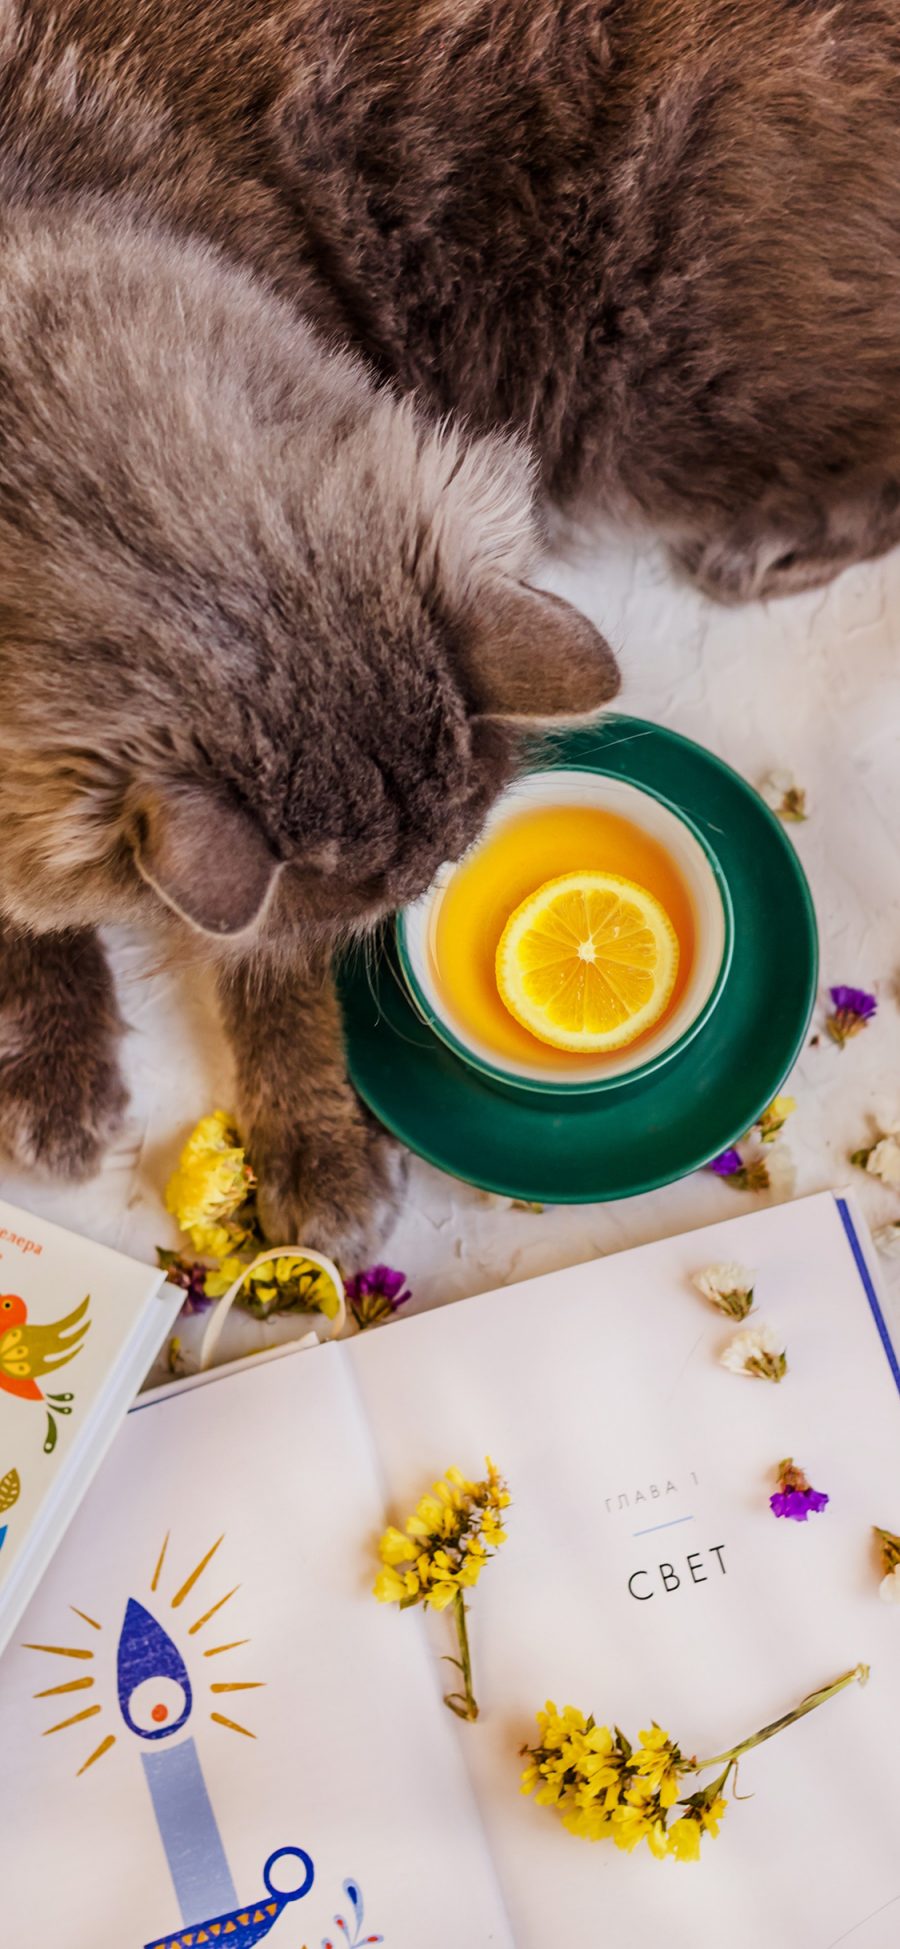 [2436×1125]猫咪宠物 柠檬茶 书籍 碎花 花瓣 苹果手机壁纸图片